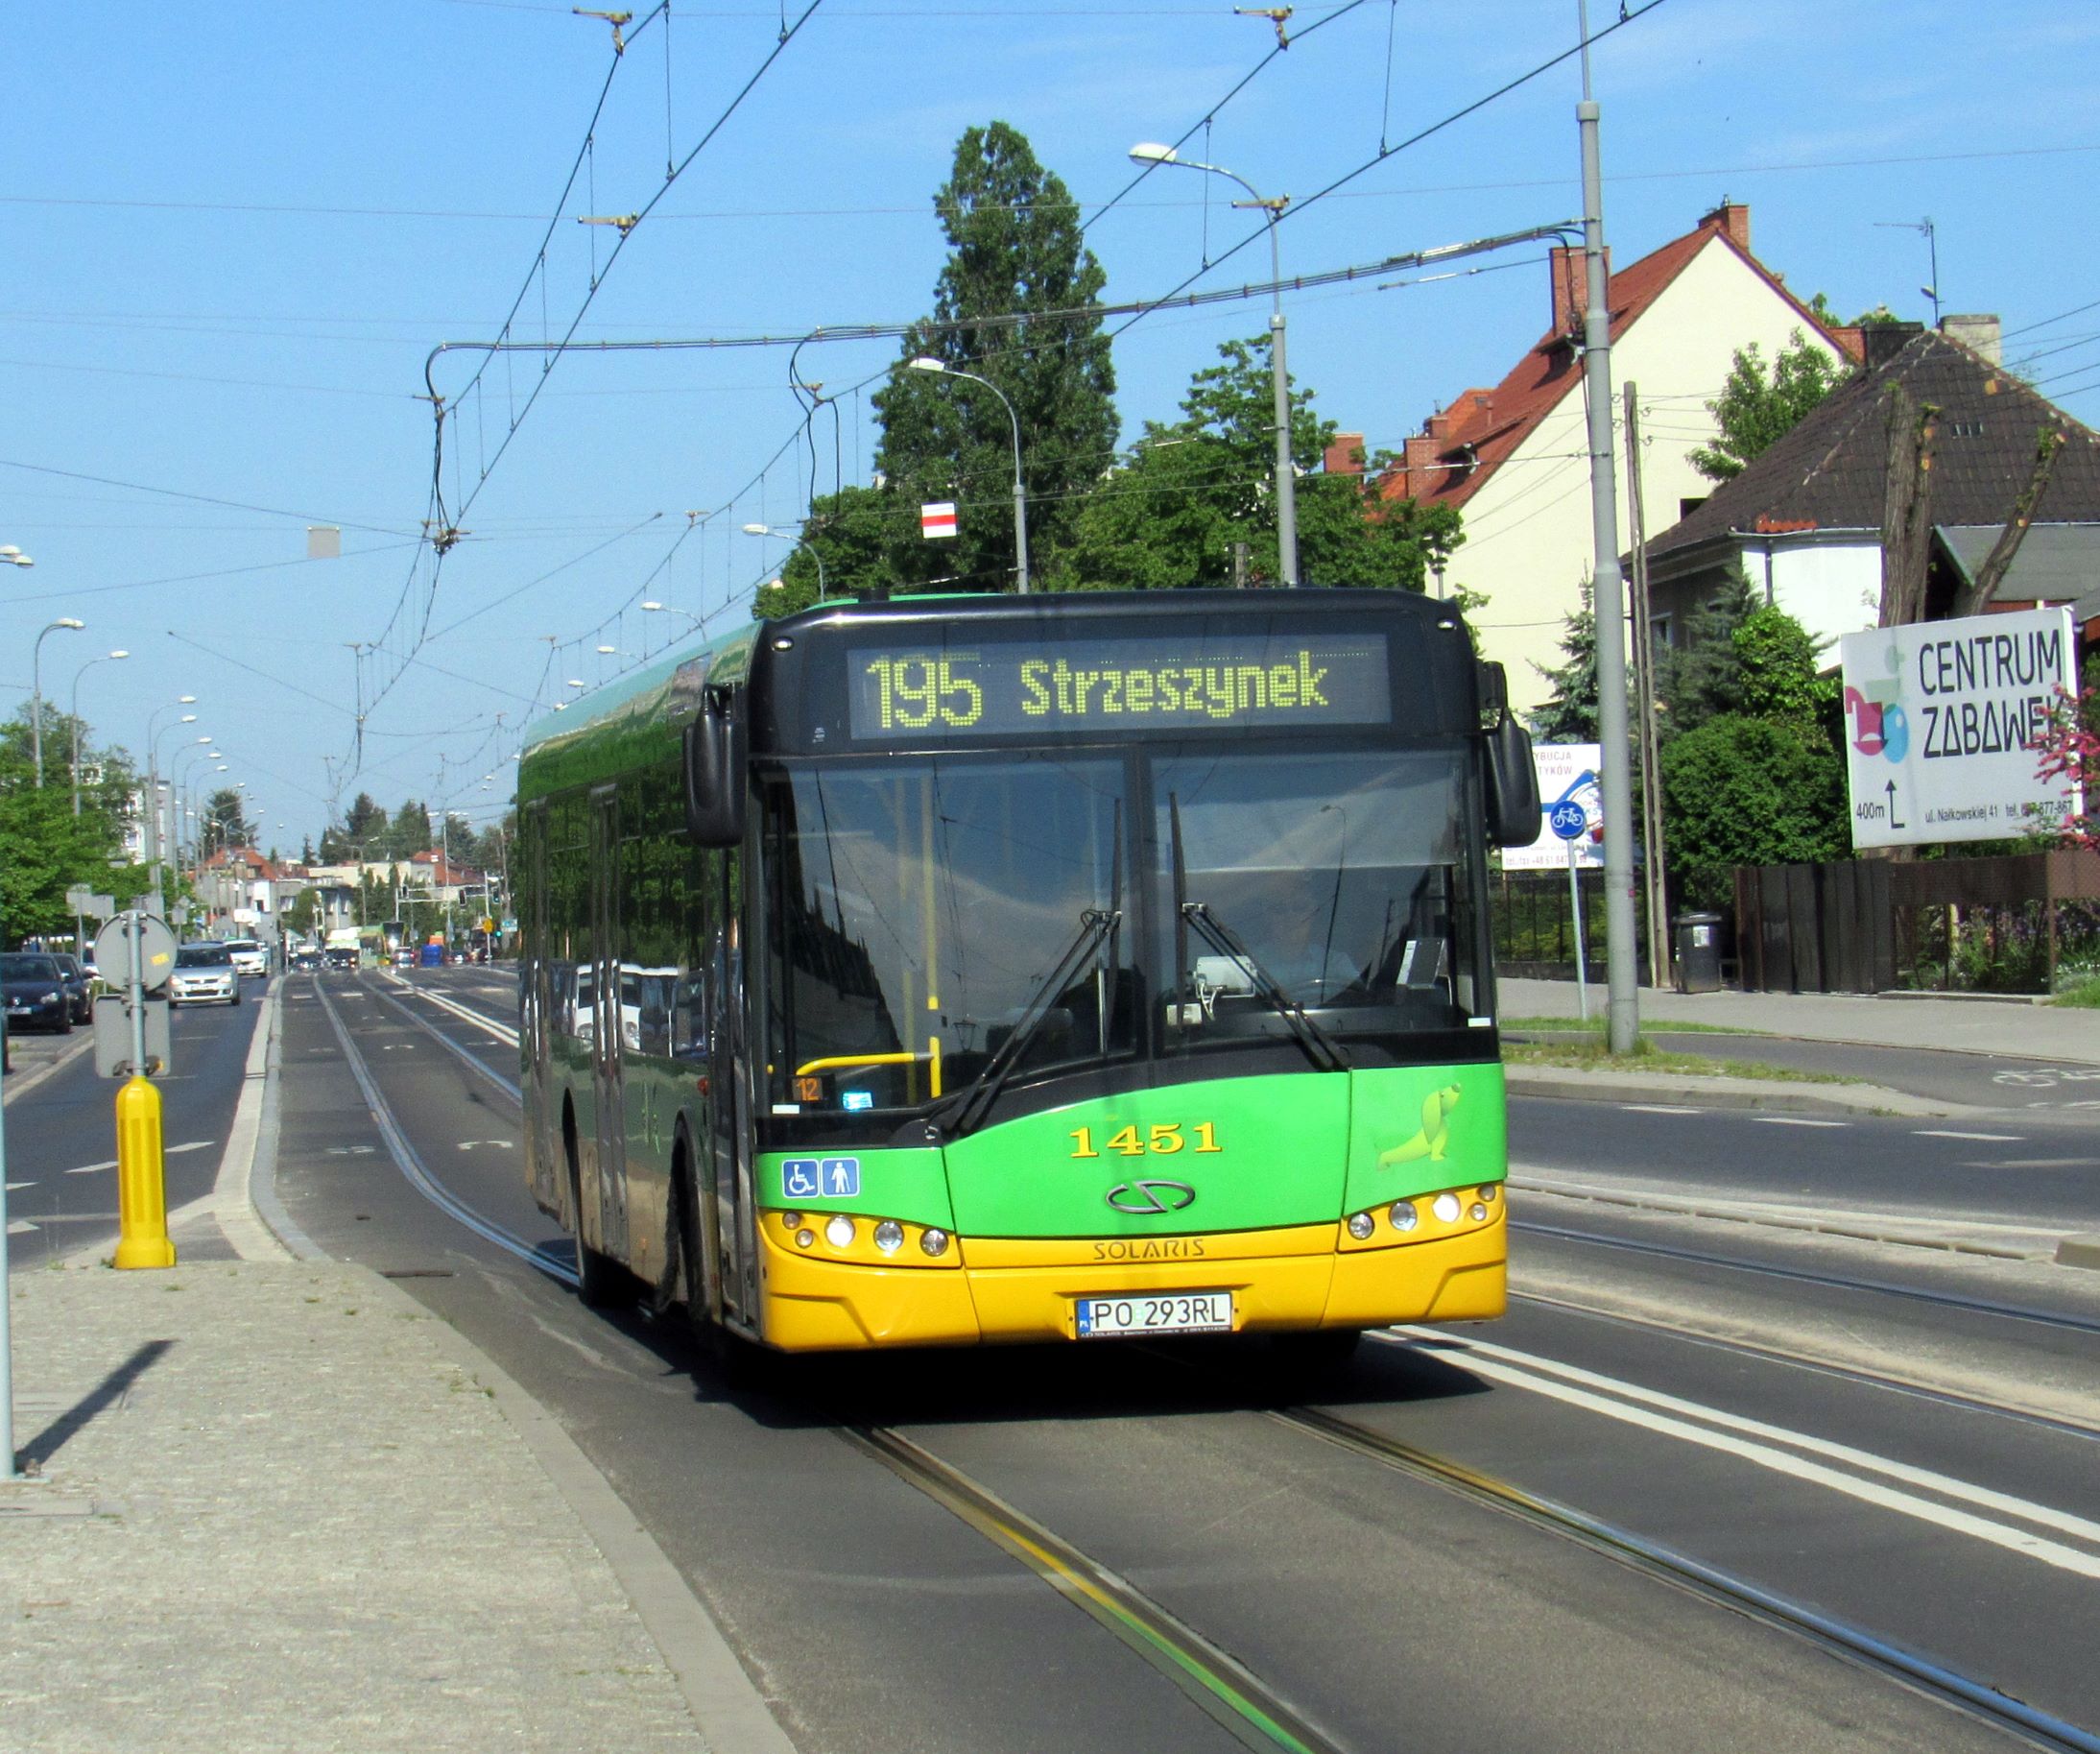 AKTUALIZACJA  Linia 195 – od 27 lipca (poniedziałek) skrócenie trasy do przystanku Strzeszynek 